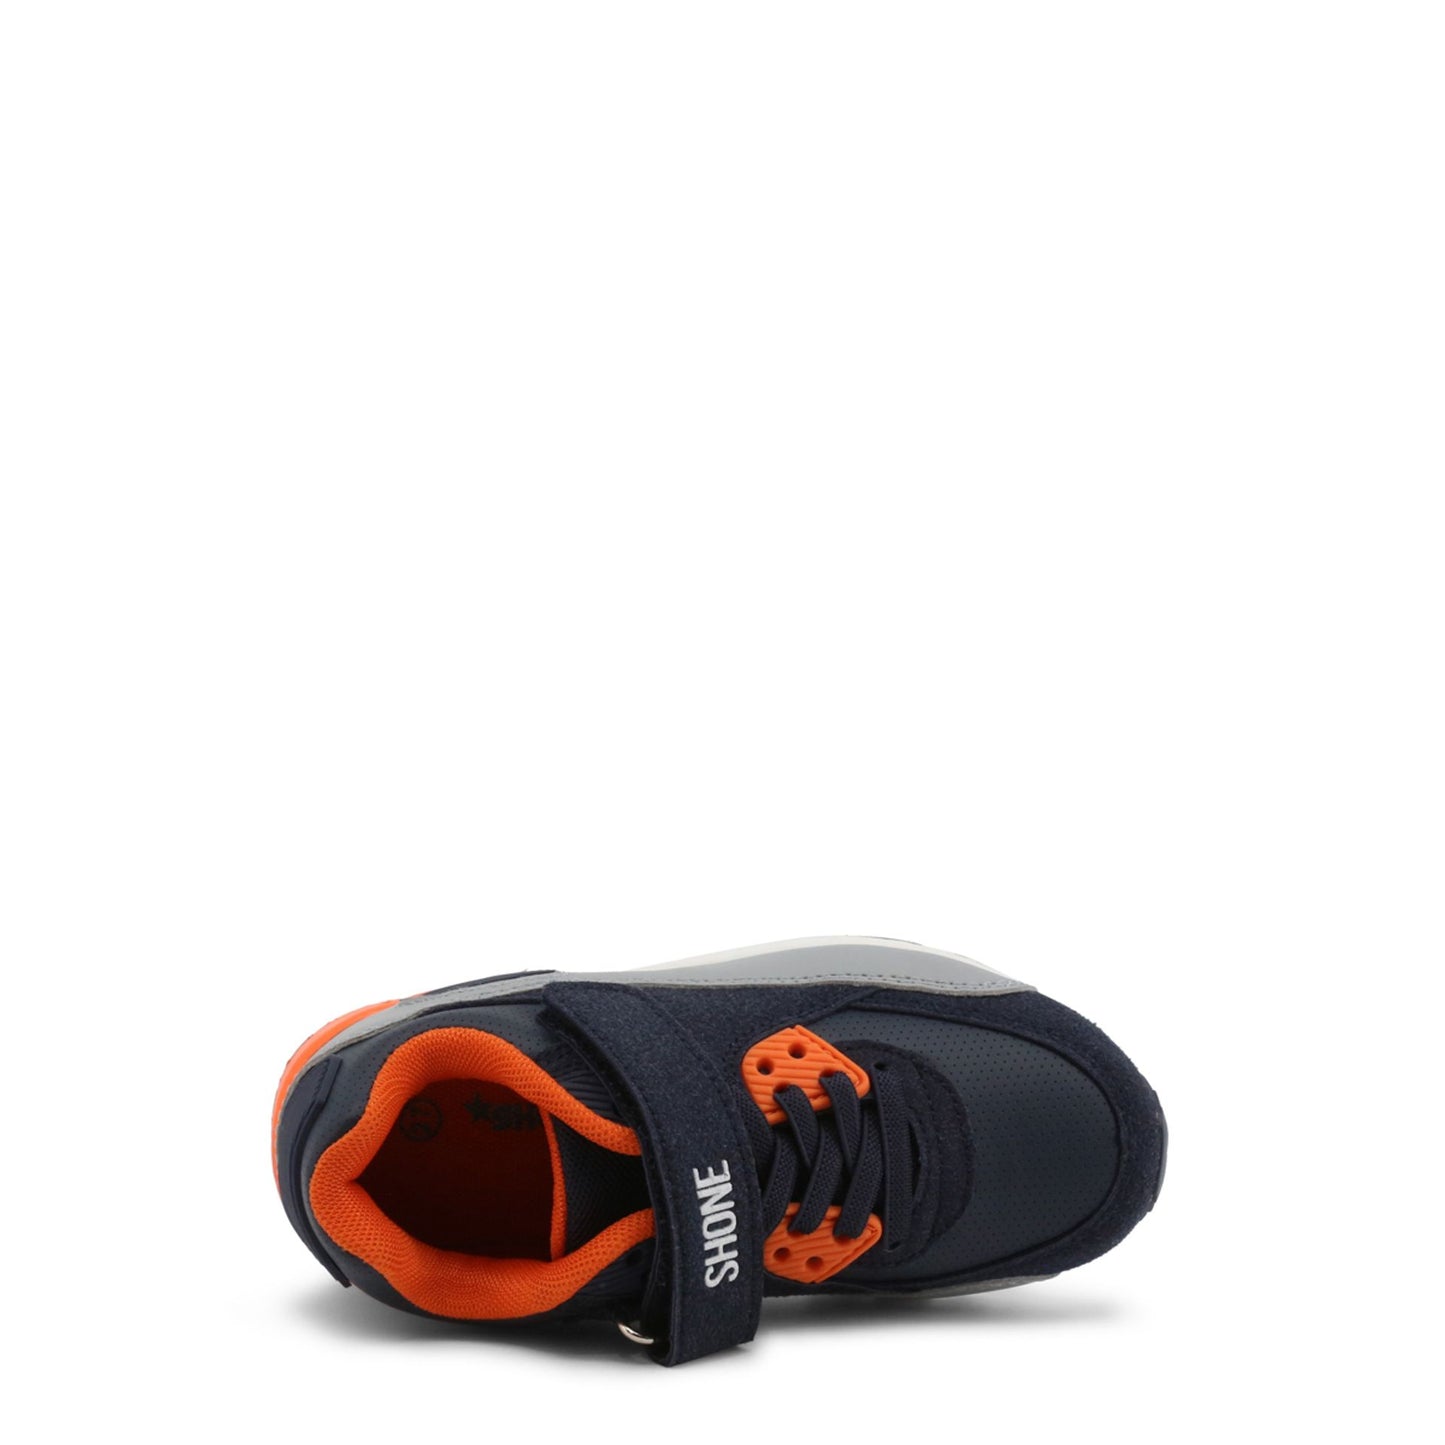 Scarpa sportiva bambino navy arancione con strappo, punta tonda e inserto nella suola